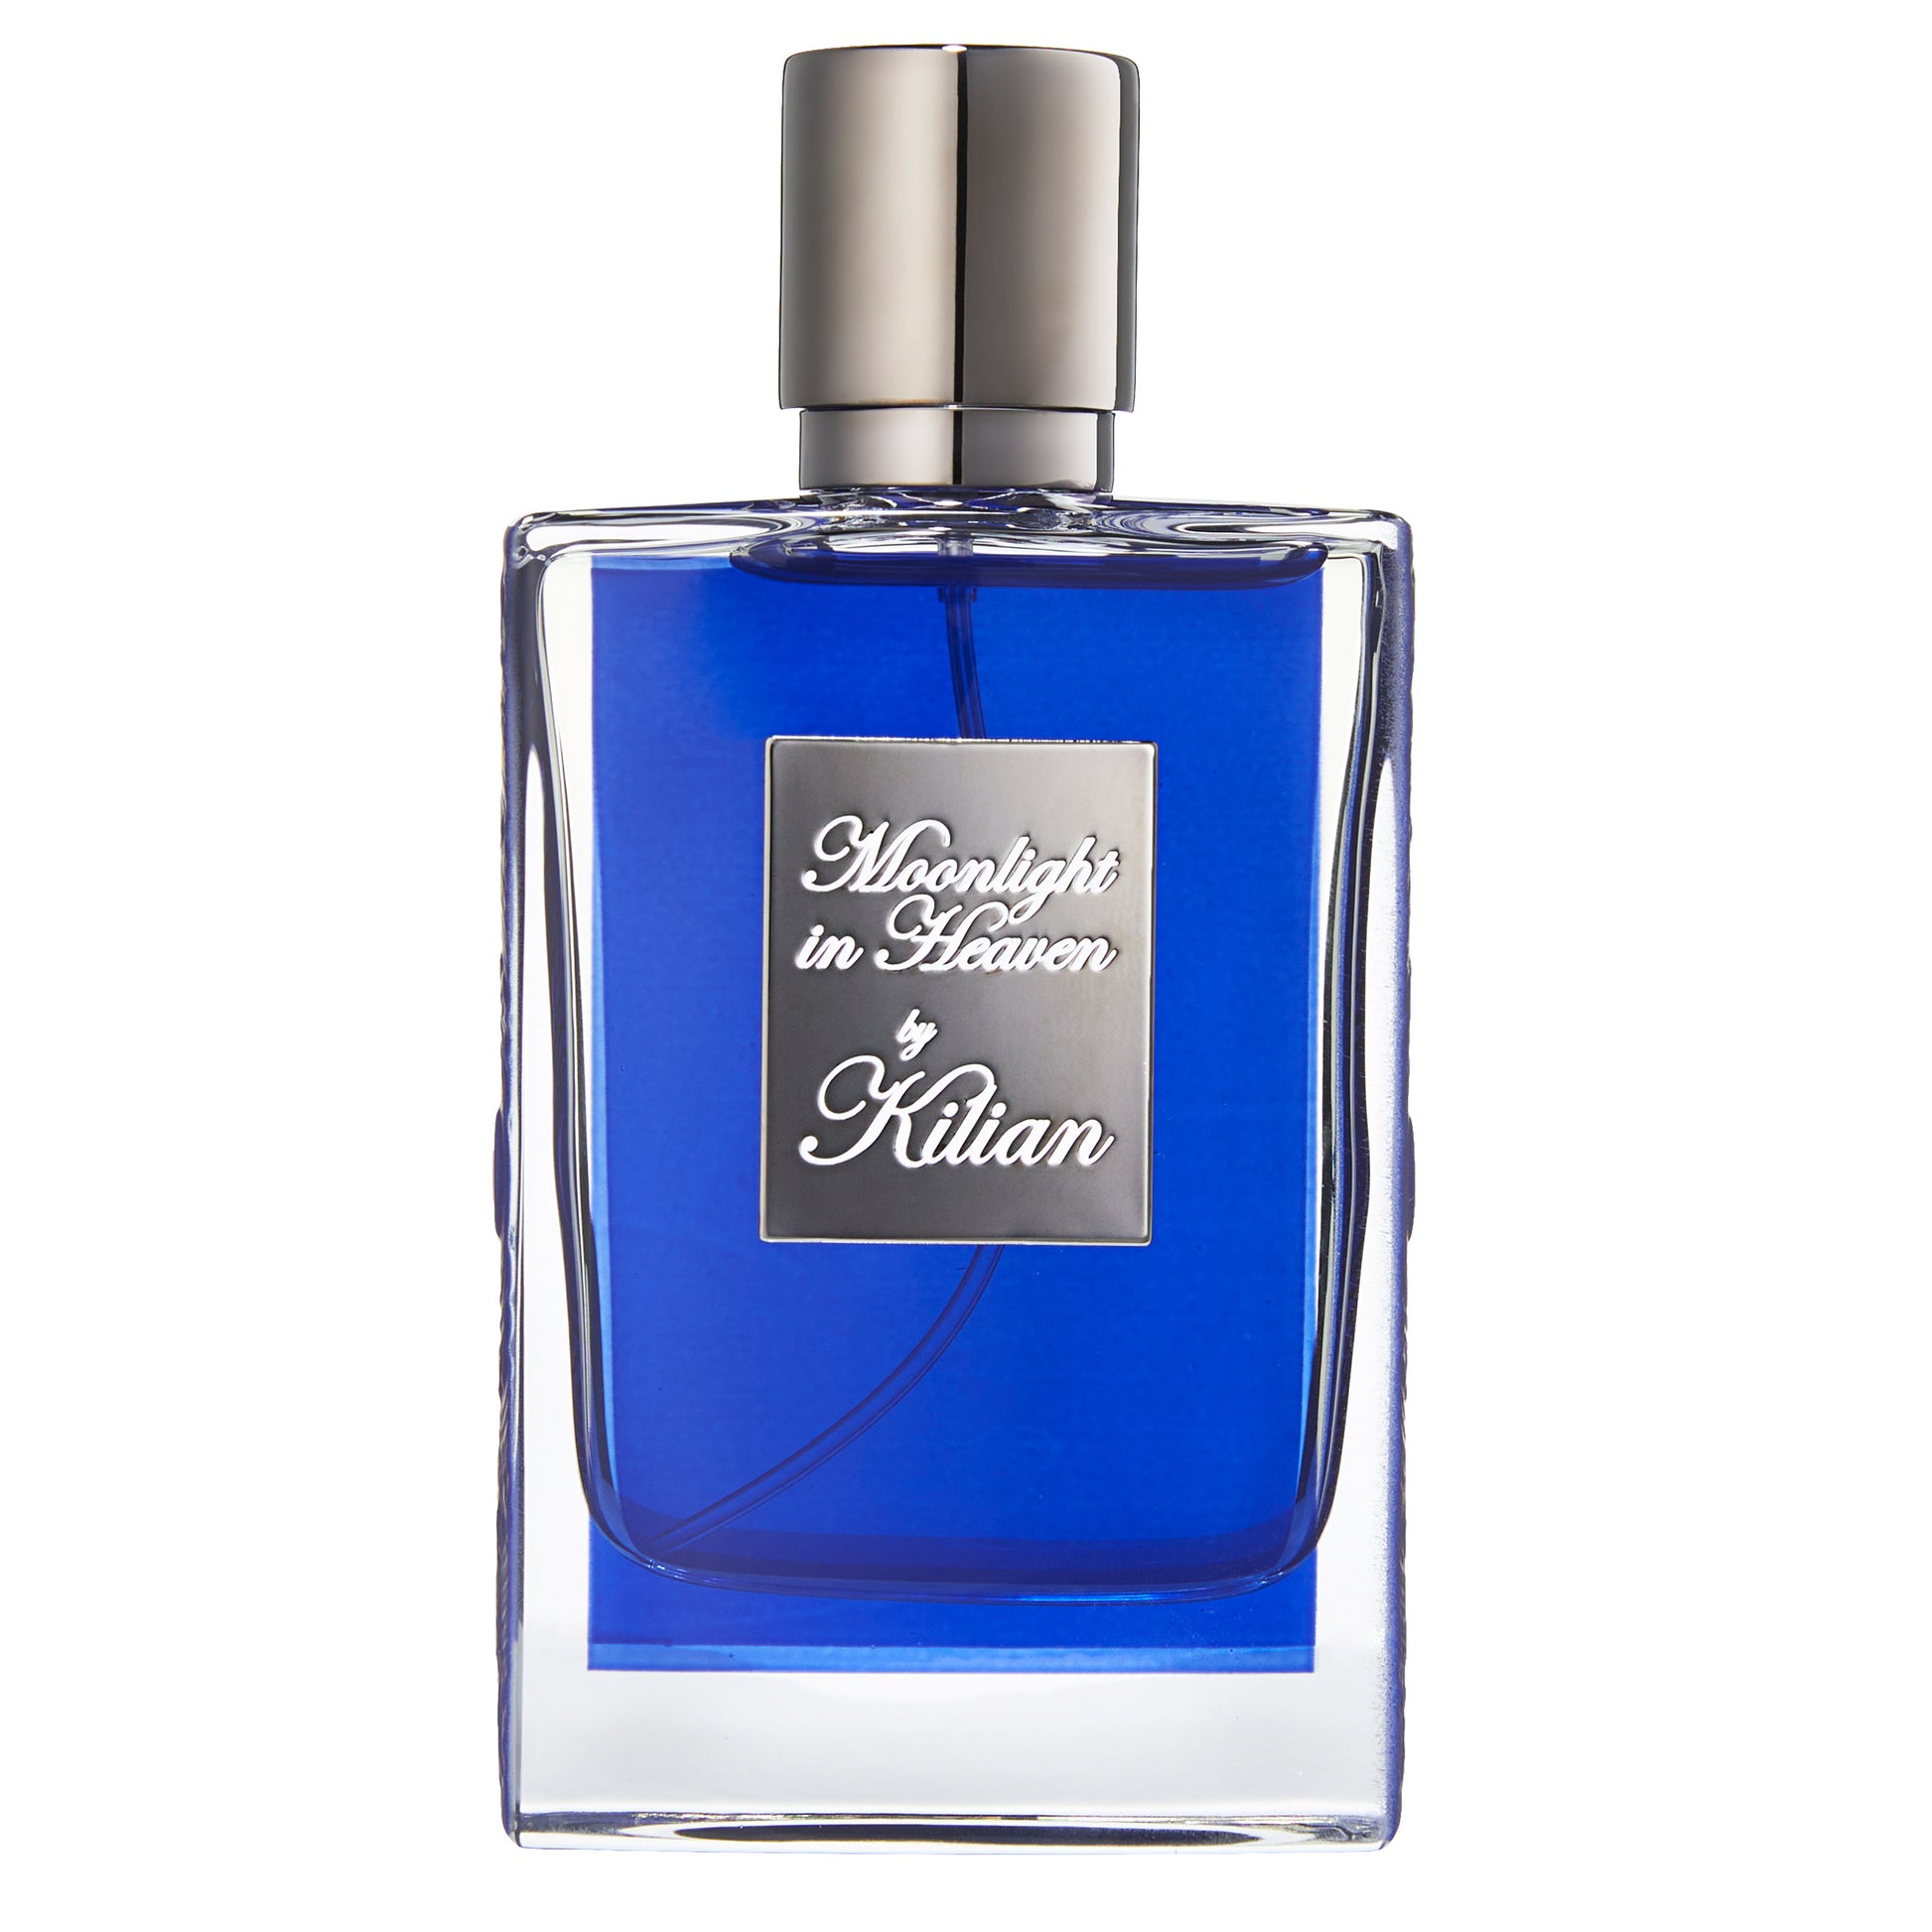 Kilian Moonlight in Heaven Eau De Parfum, 1.7 Fluid Ounces